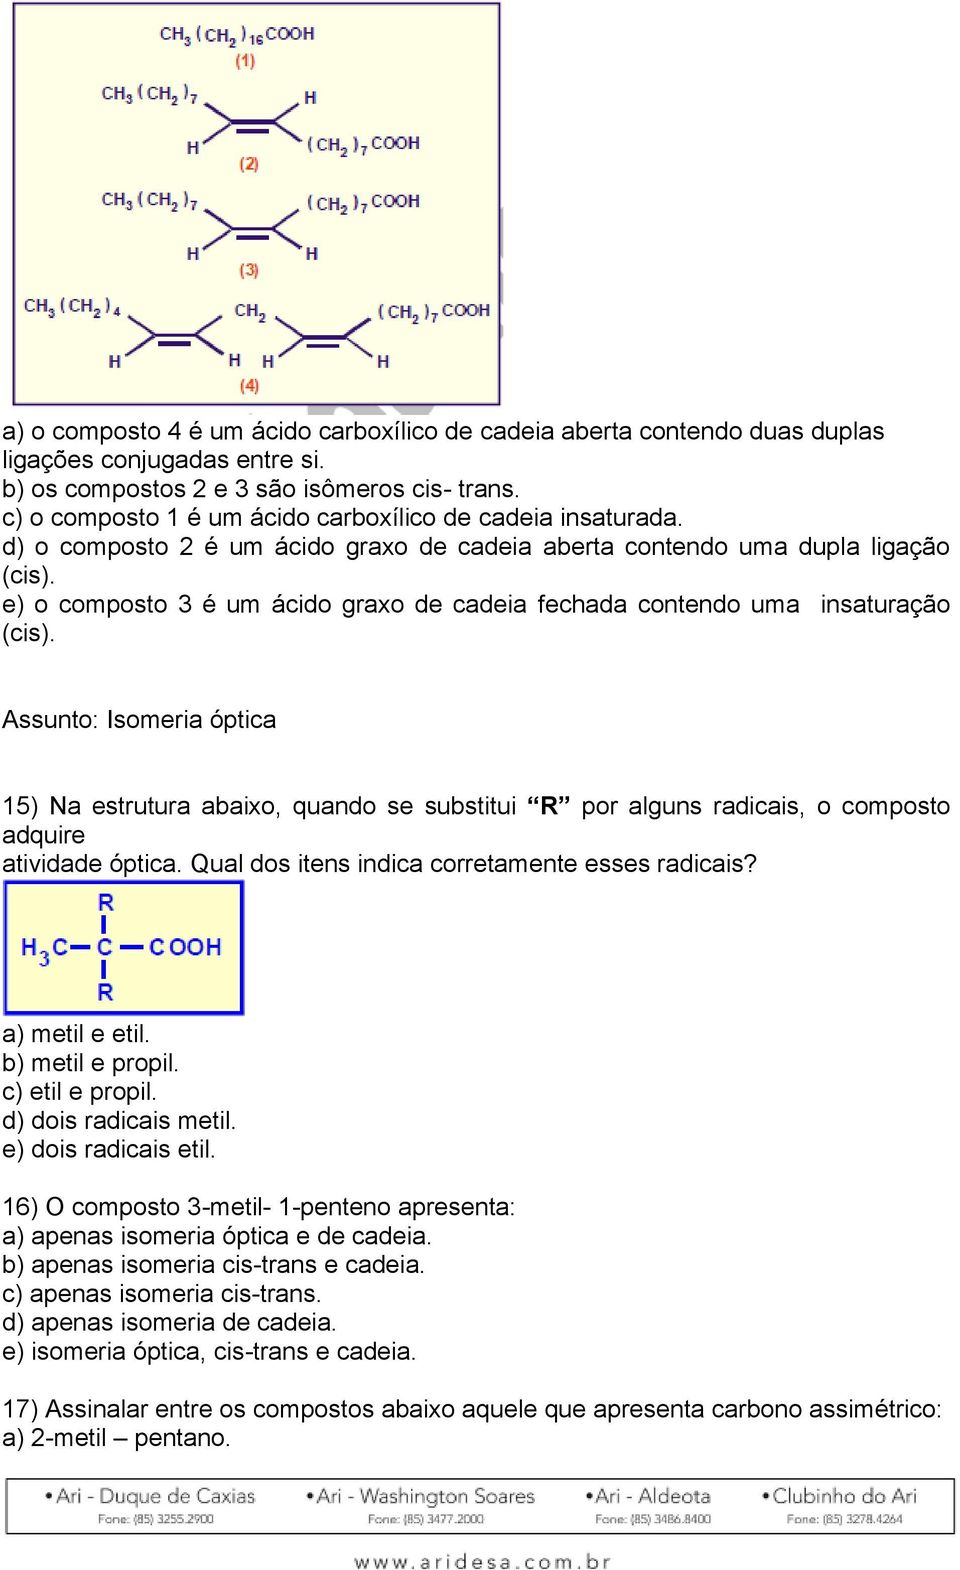 e) o composto 3 é um ácido graxo de cadeia fechada contendo uma insaturação (cis).